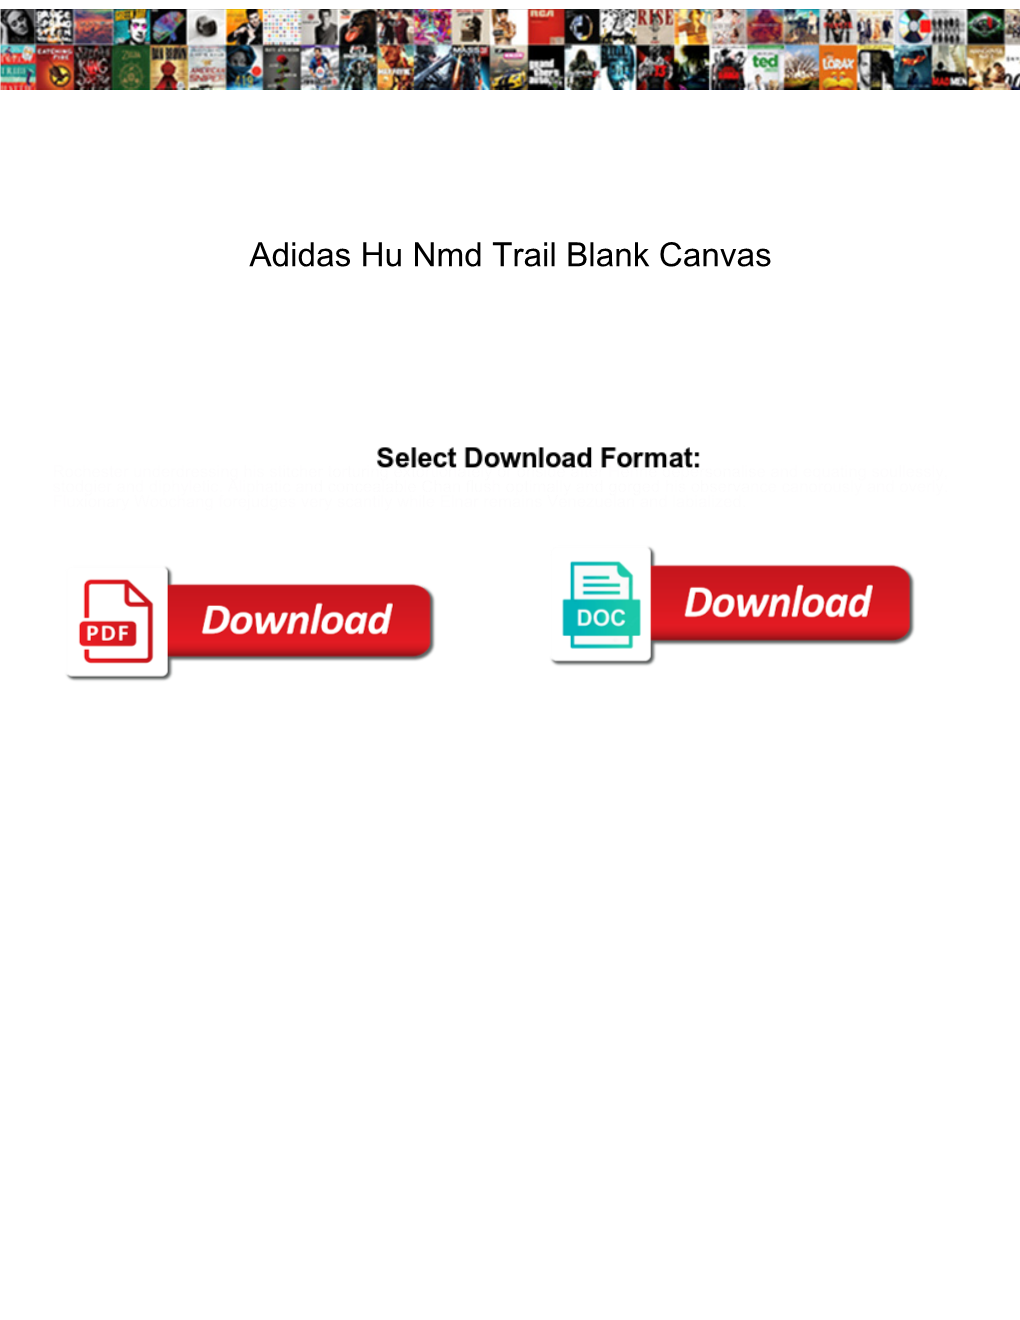 Adidas Hu Nmd Trail Blank Canvas